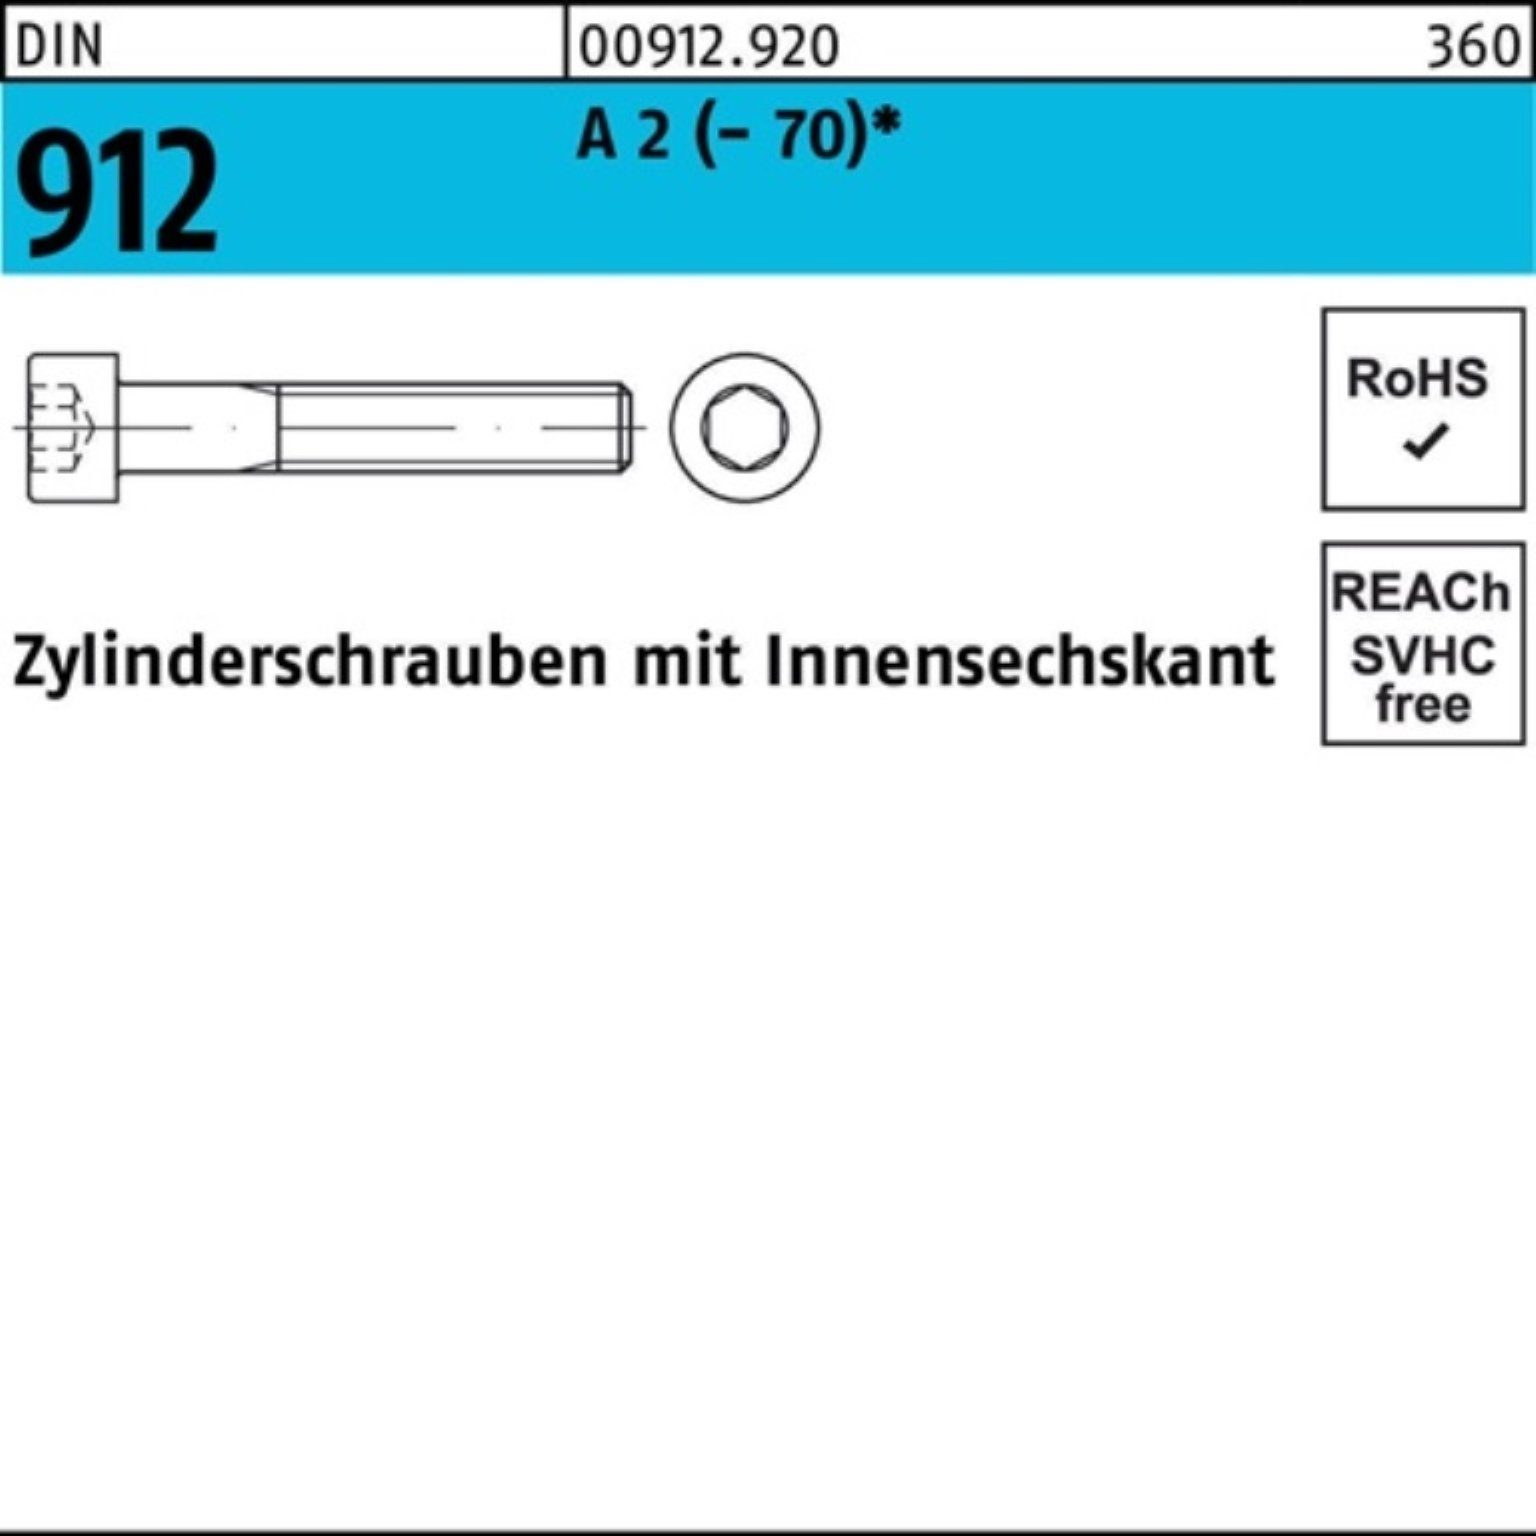 Zylinderschraube 912 200er 2 A (70) Reyher Innen-6kt Zylinderschraube St M4x 200 Pack 18 DIN